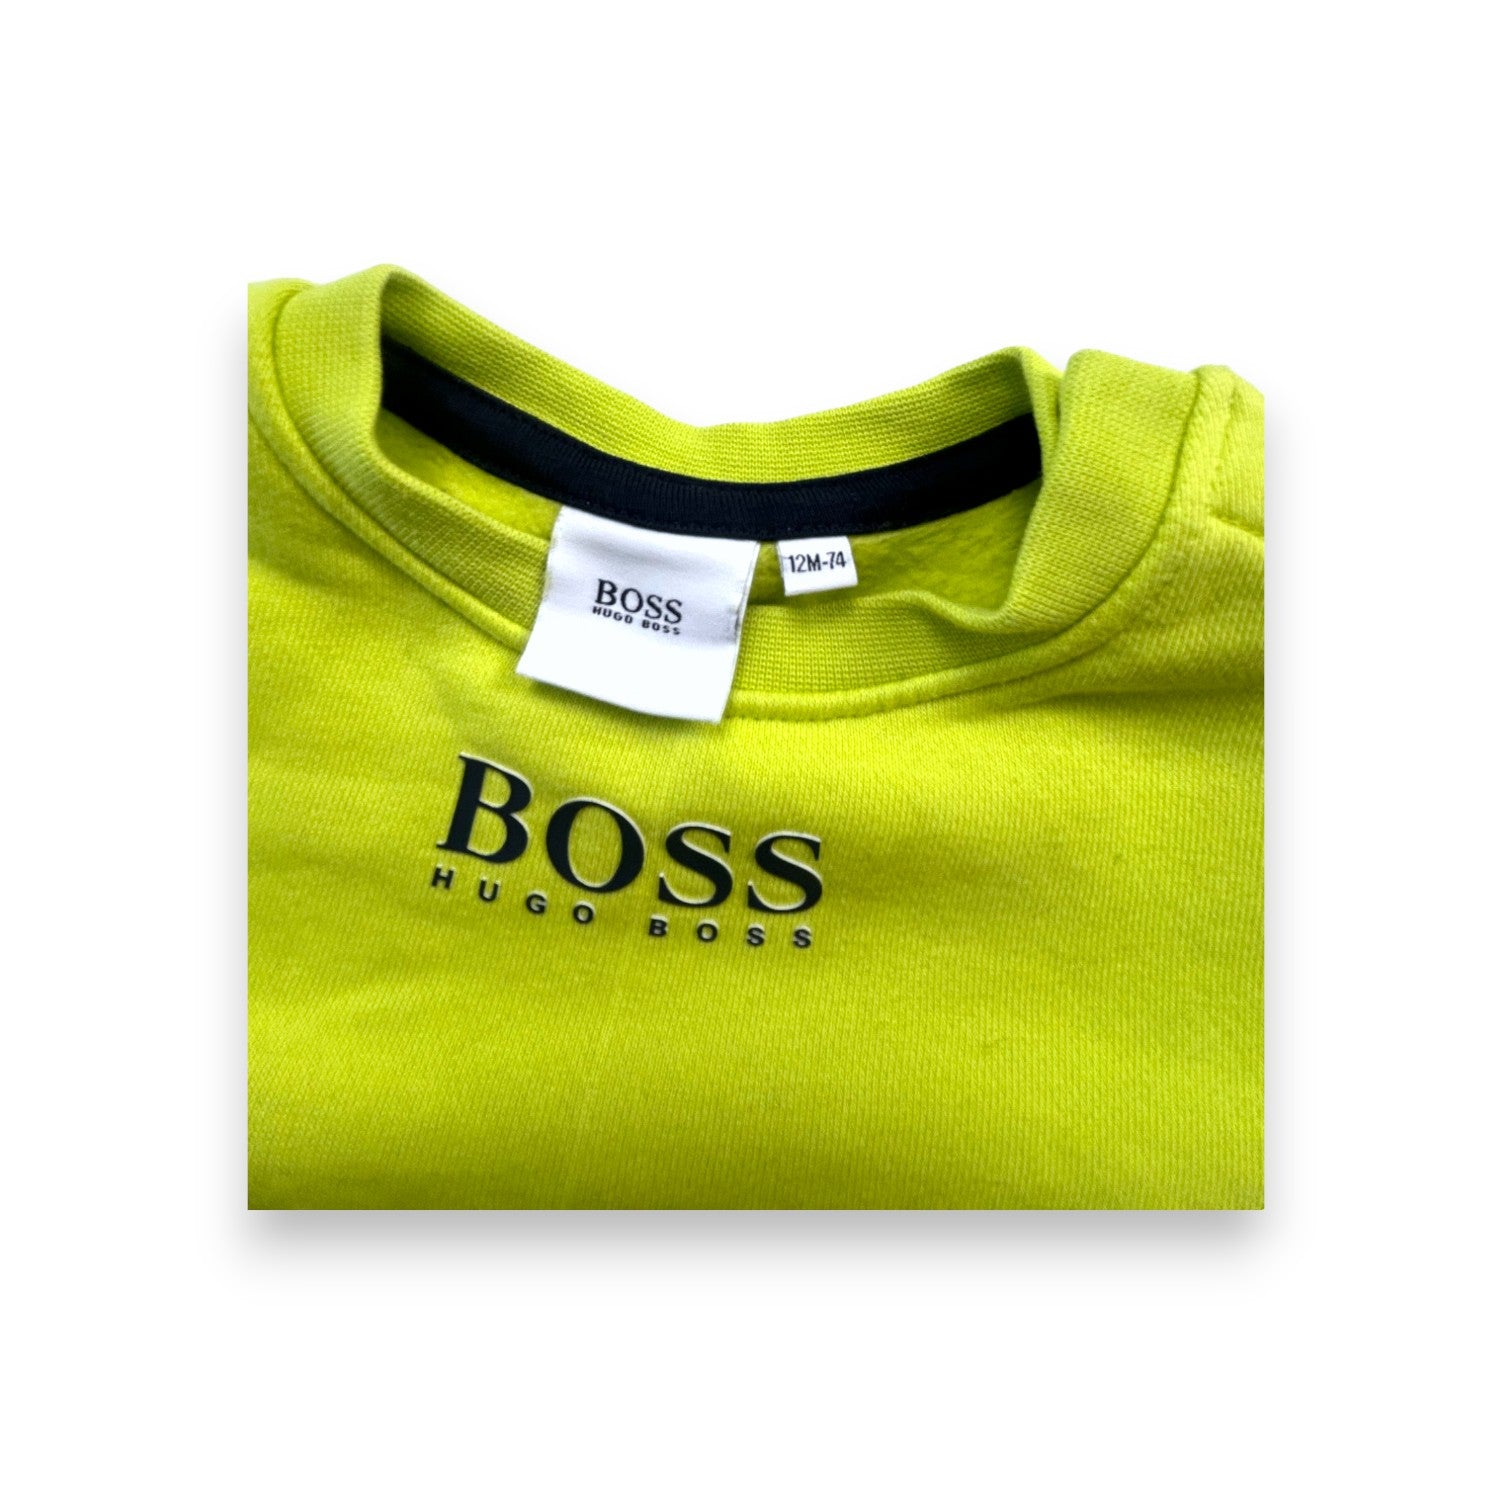 HUGO BOSS - T-shirt à manches longues imprimé logo - 12 mois